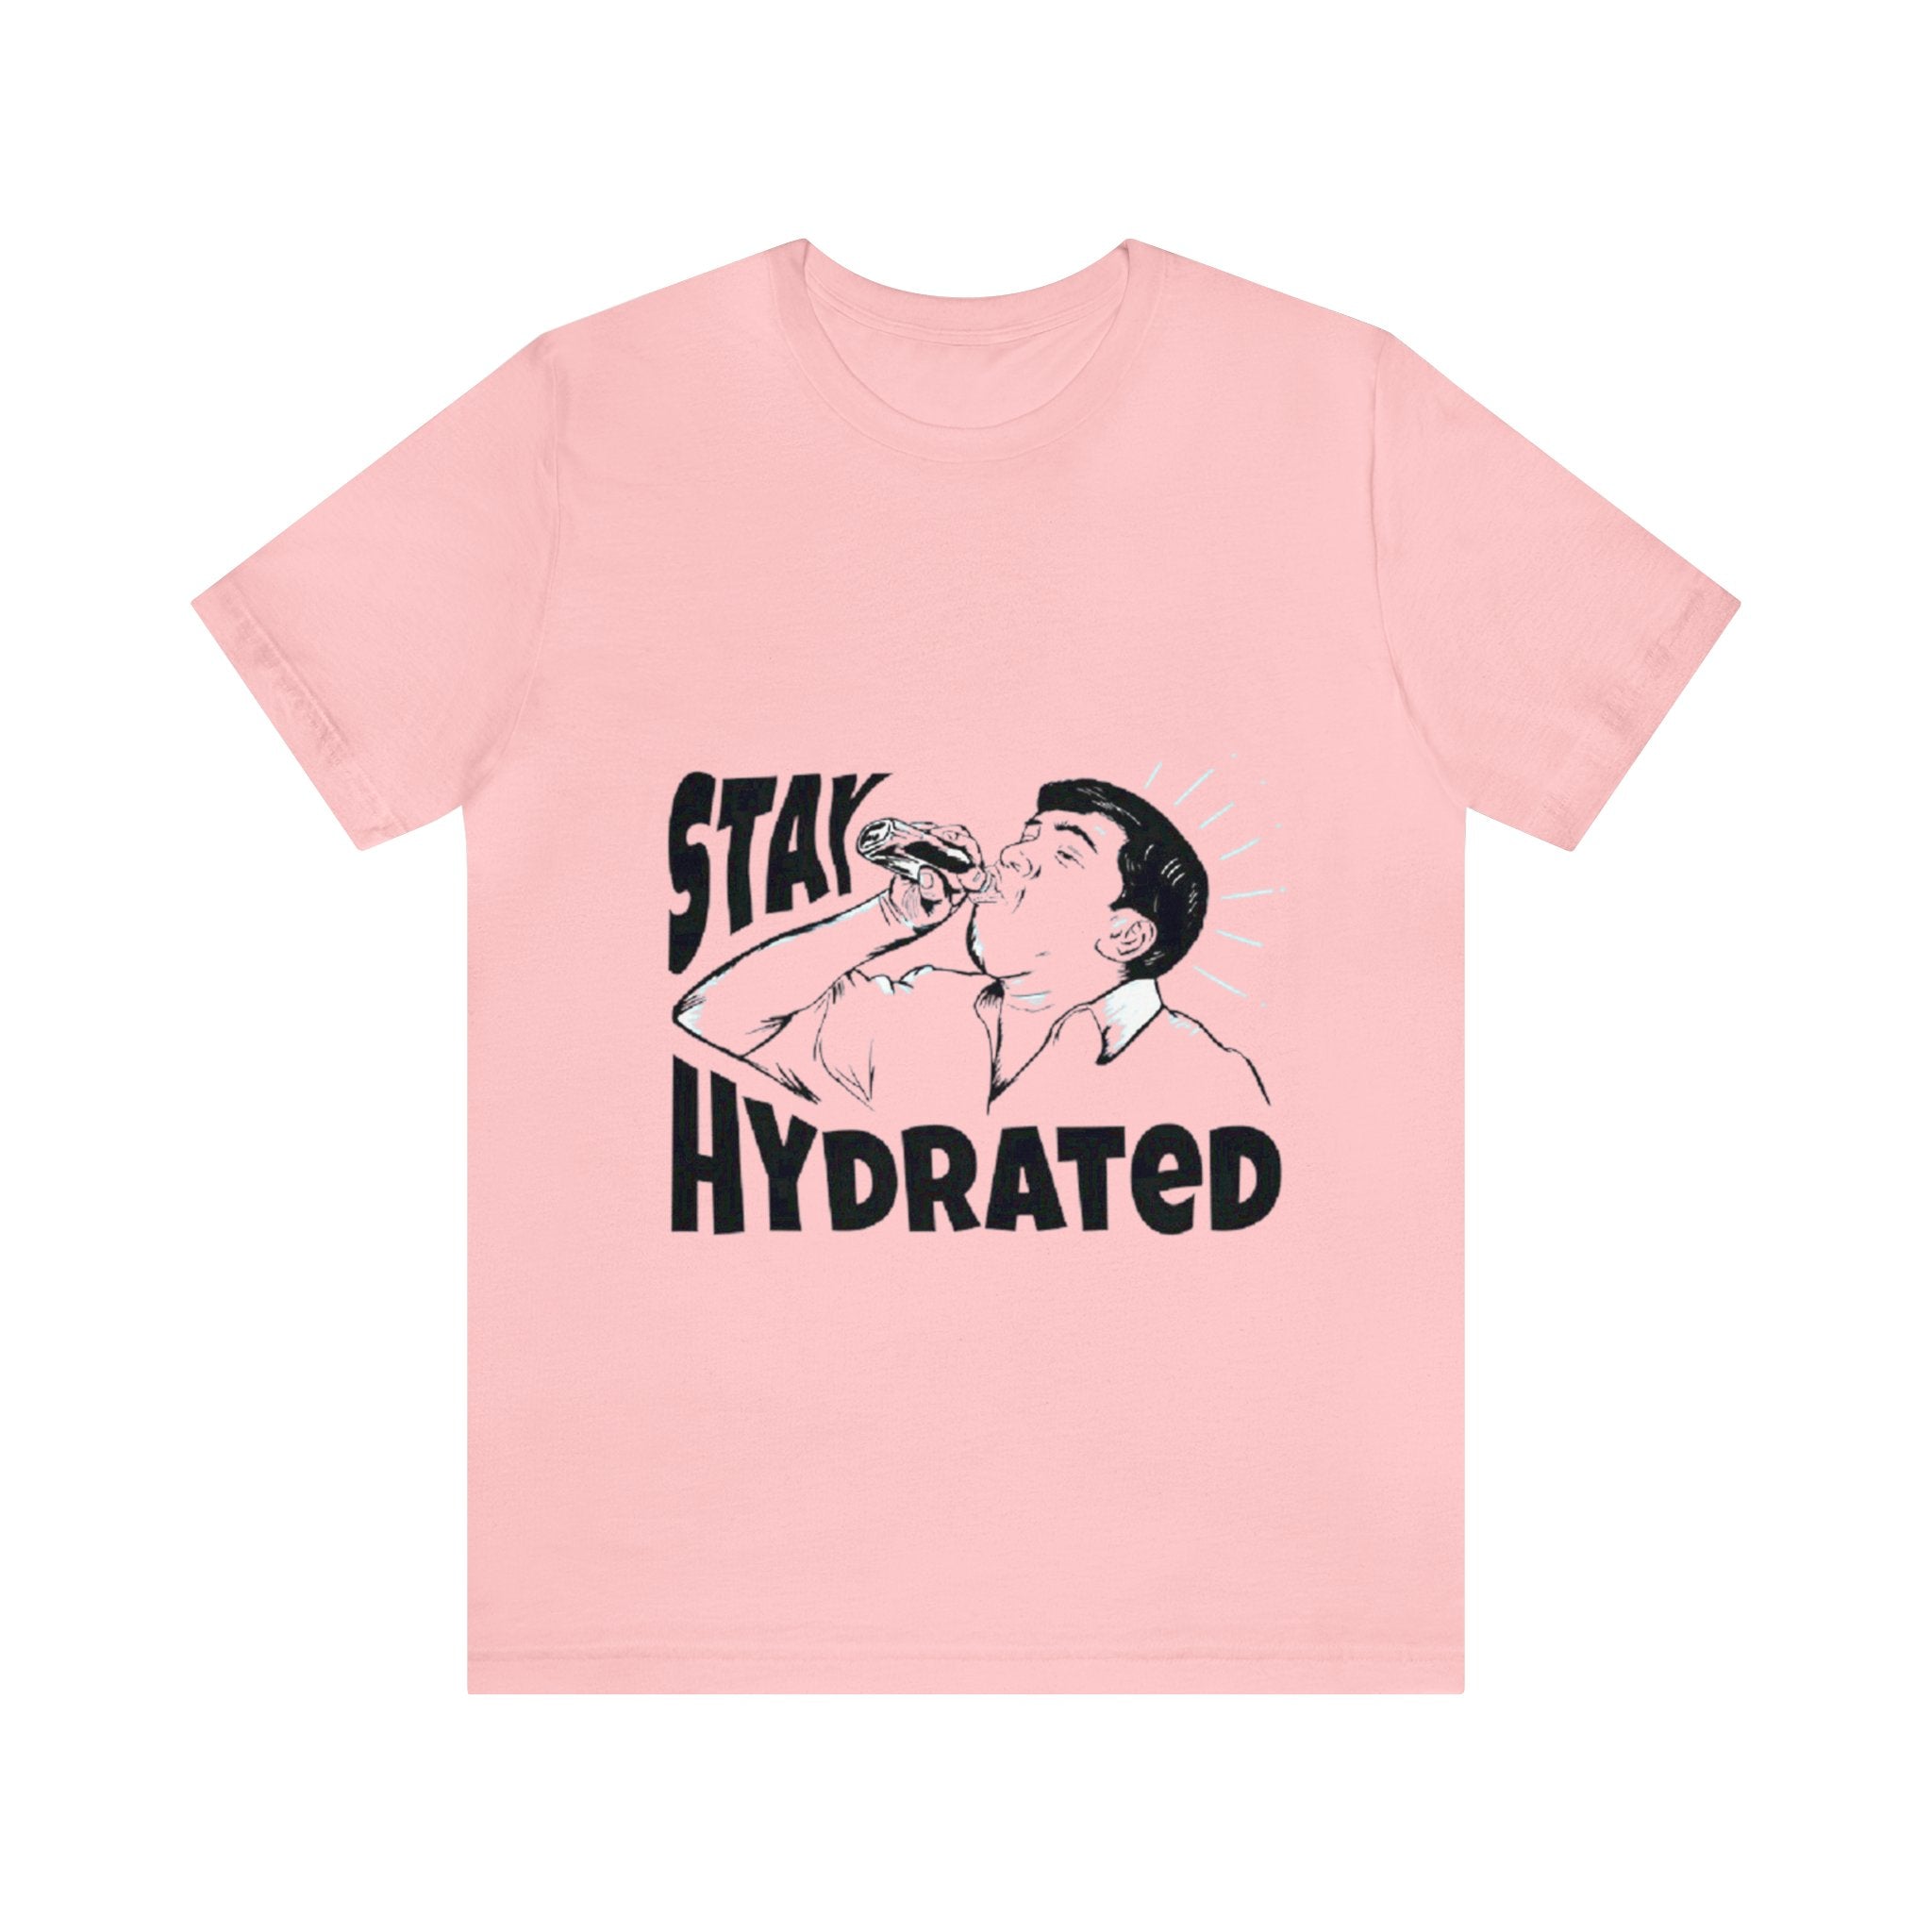 Stay hydrated tshirt